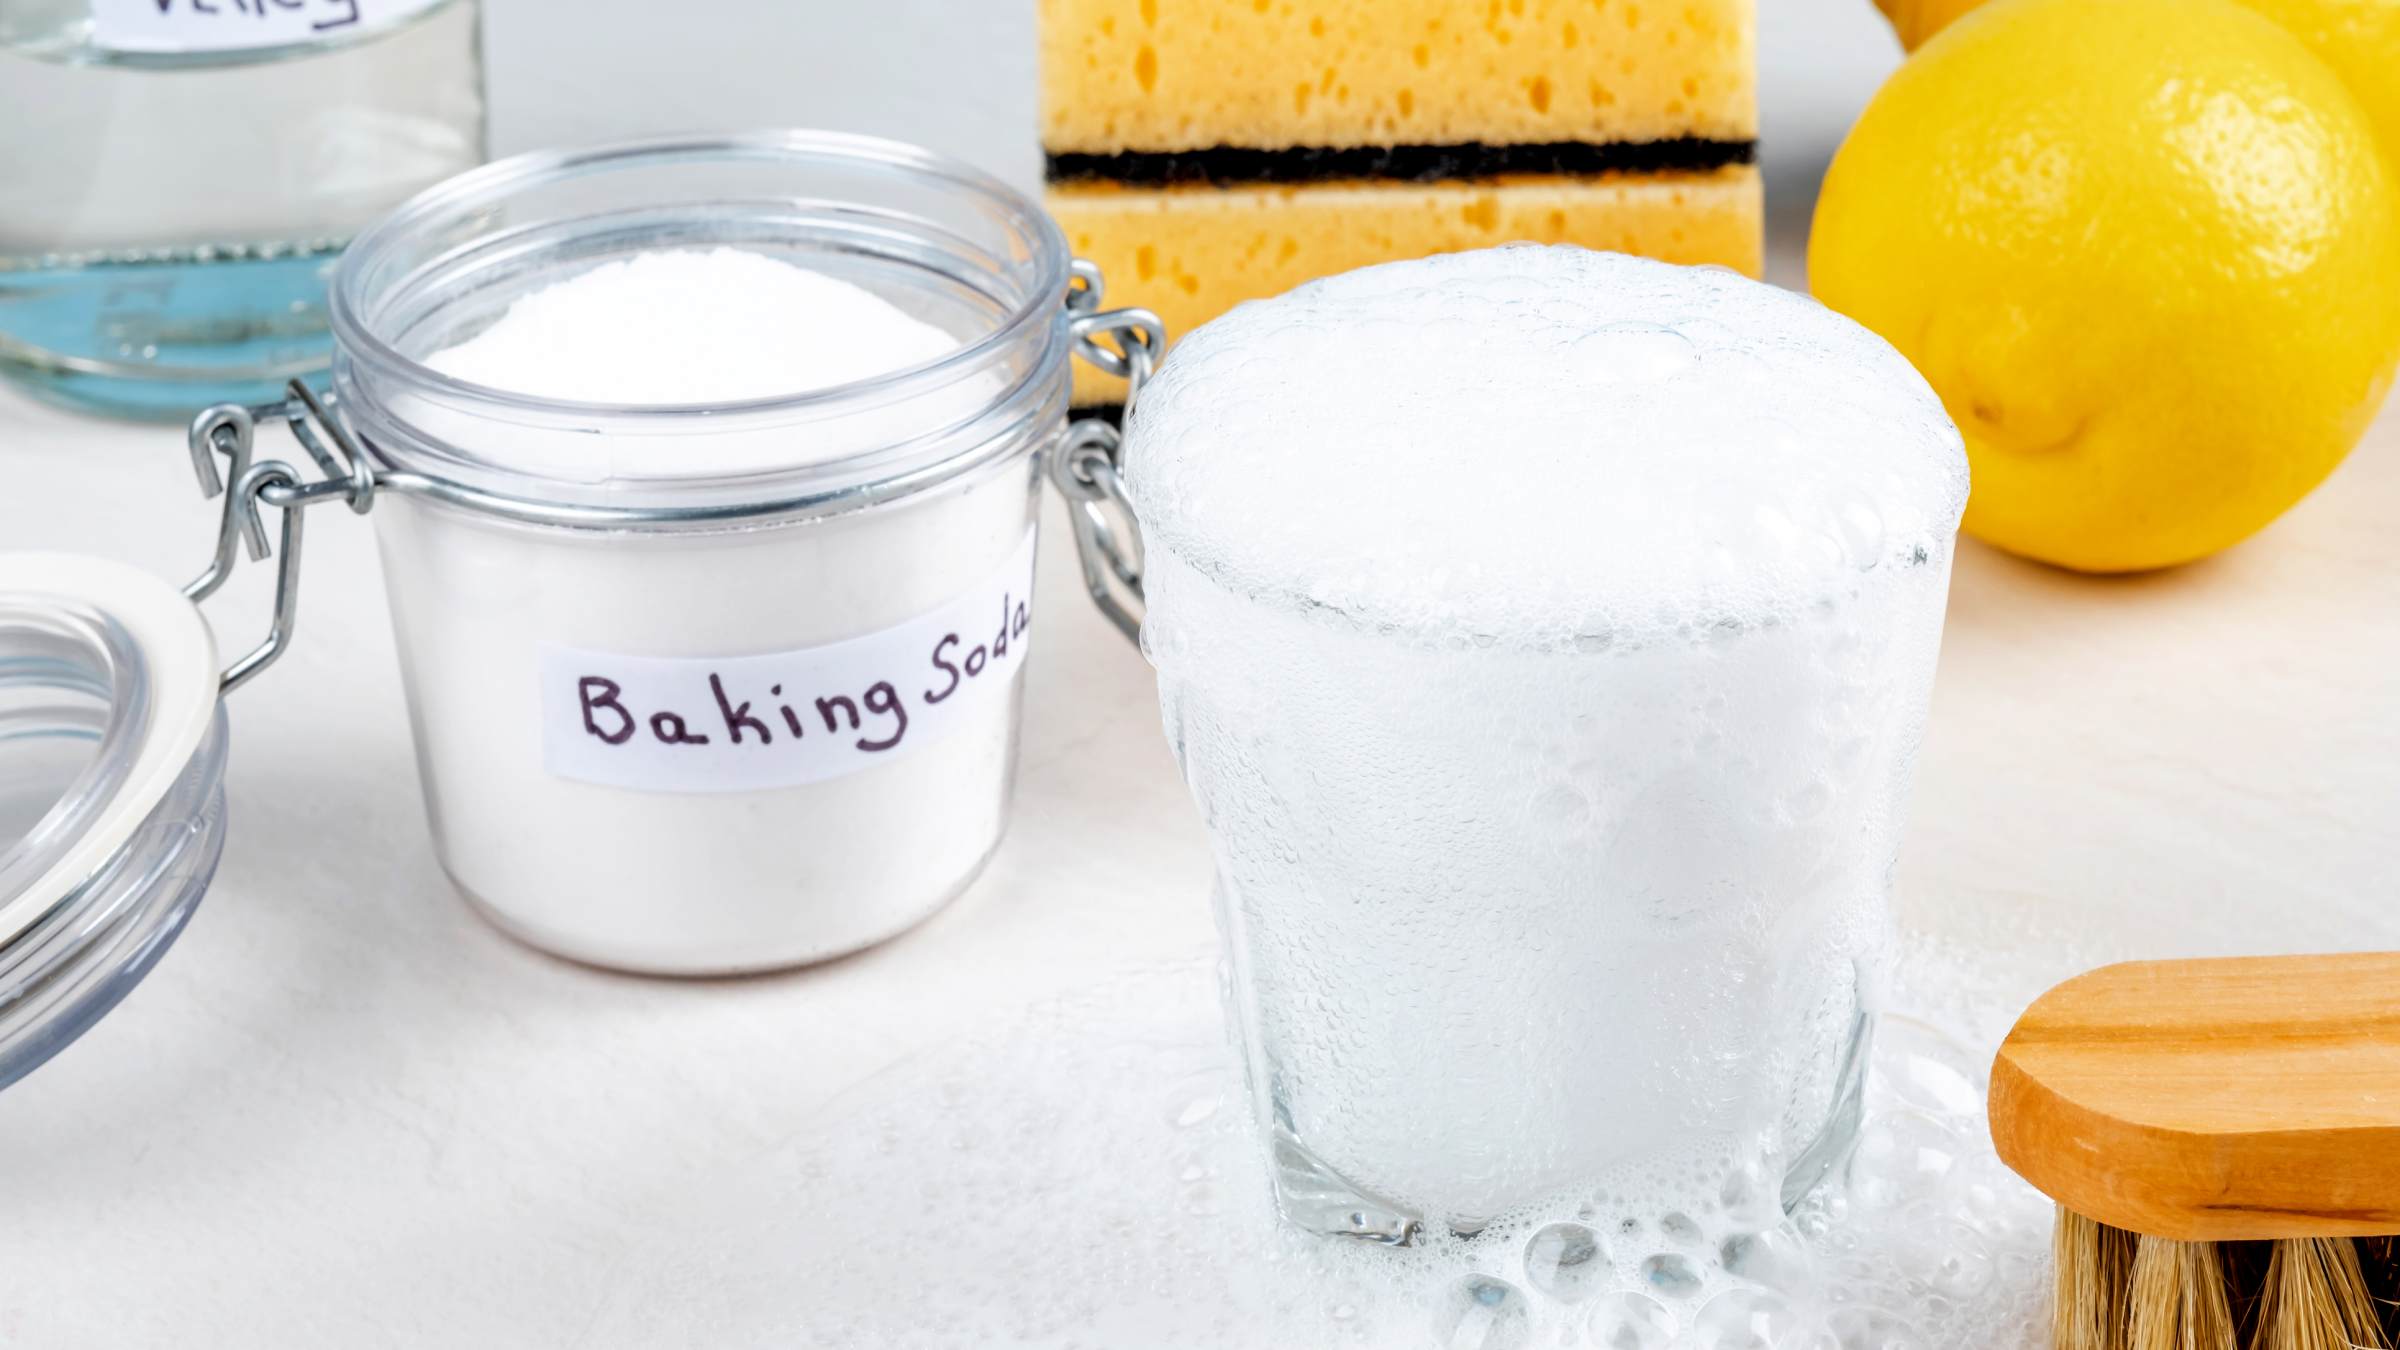 baking soda vs baking powder in terms of reactivity